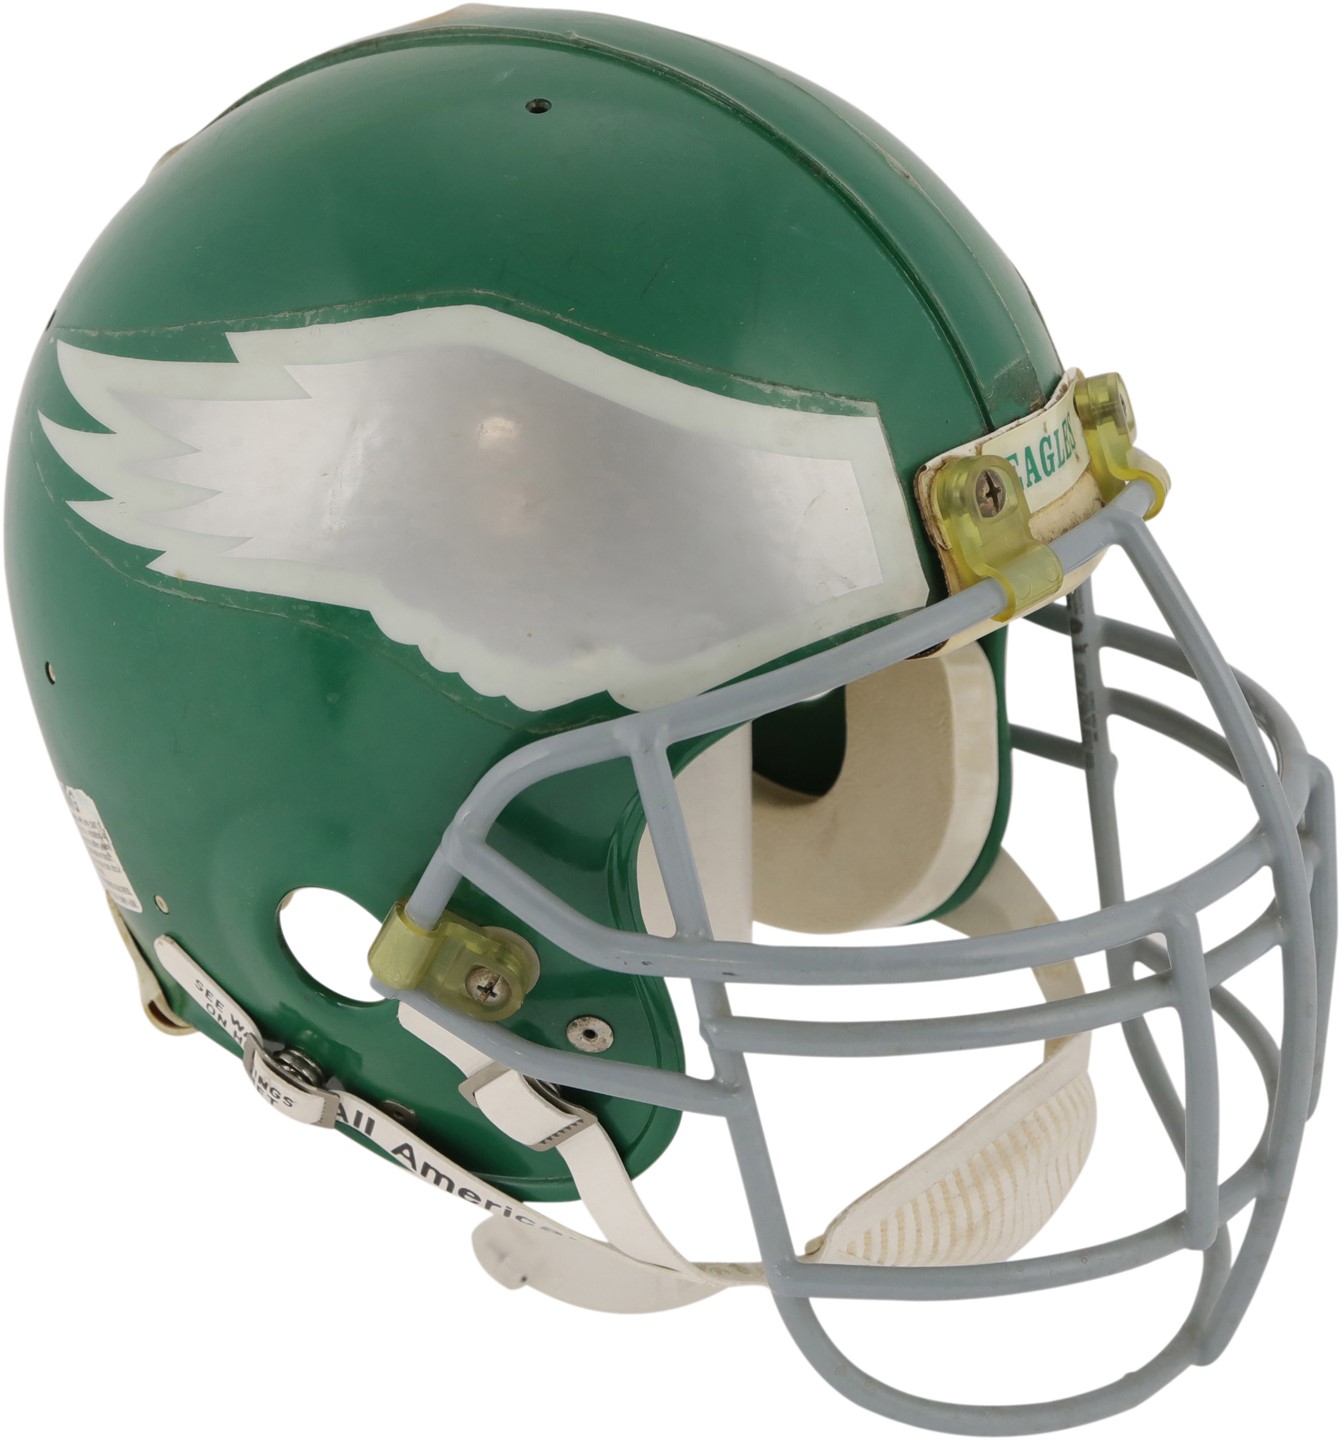 The Philadelphia Eagles Collection - Circa 1990 Reggie White Philadelphia Eagles Game Worn Helmet (NSM Museum Collection)